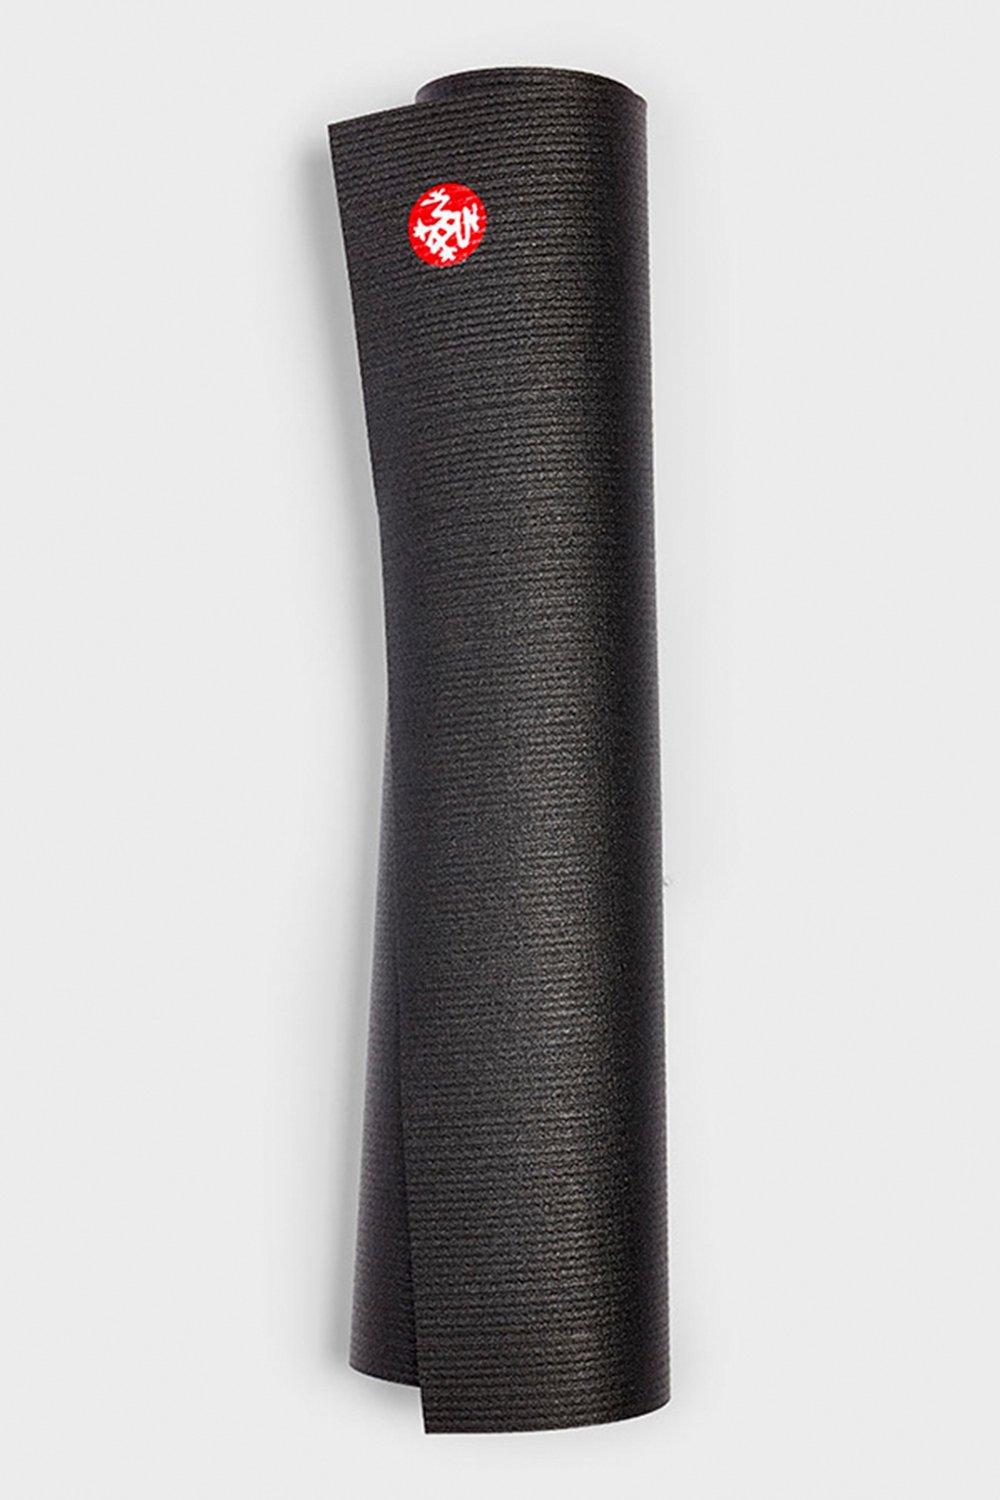 Коврик для йоги PROlite, длинный, 79 дюймов, 4,7 мм Manduka, черный коврик для йоги demix мультицвет